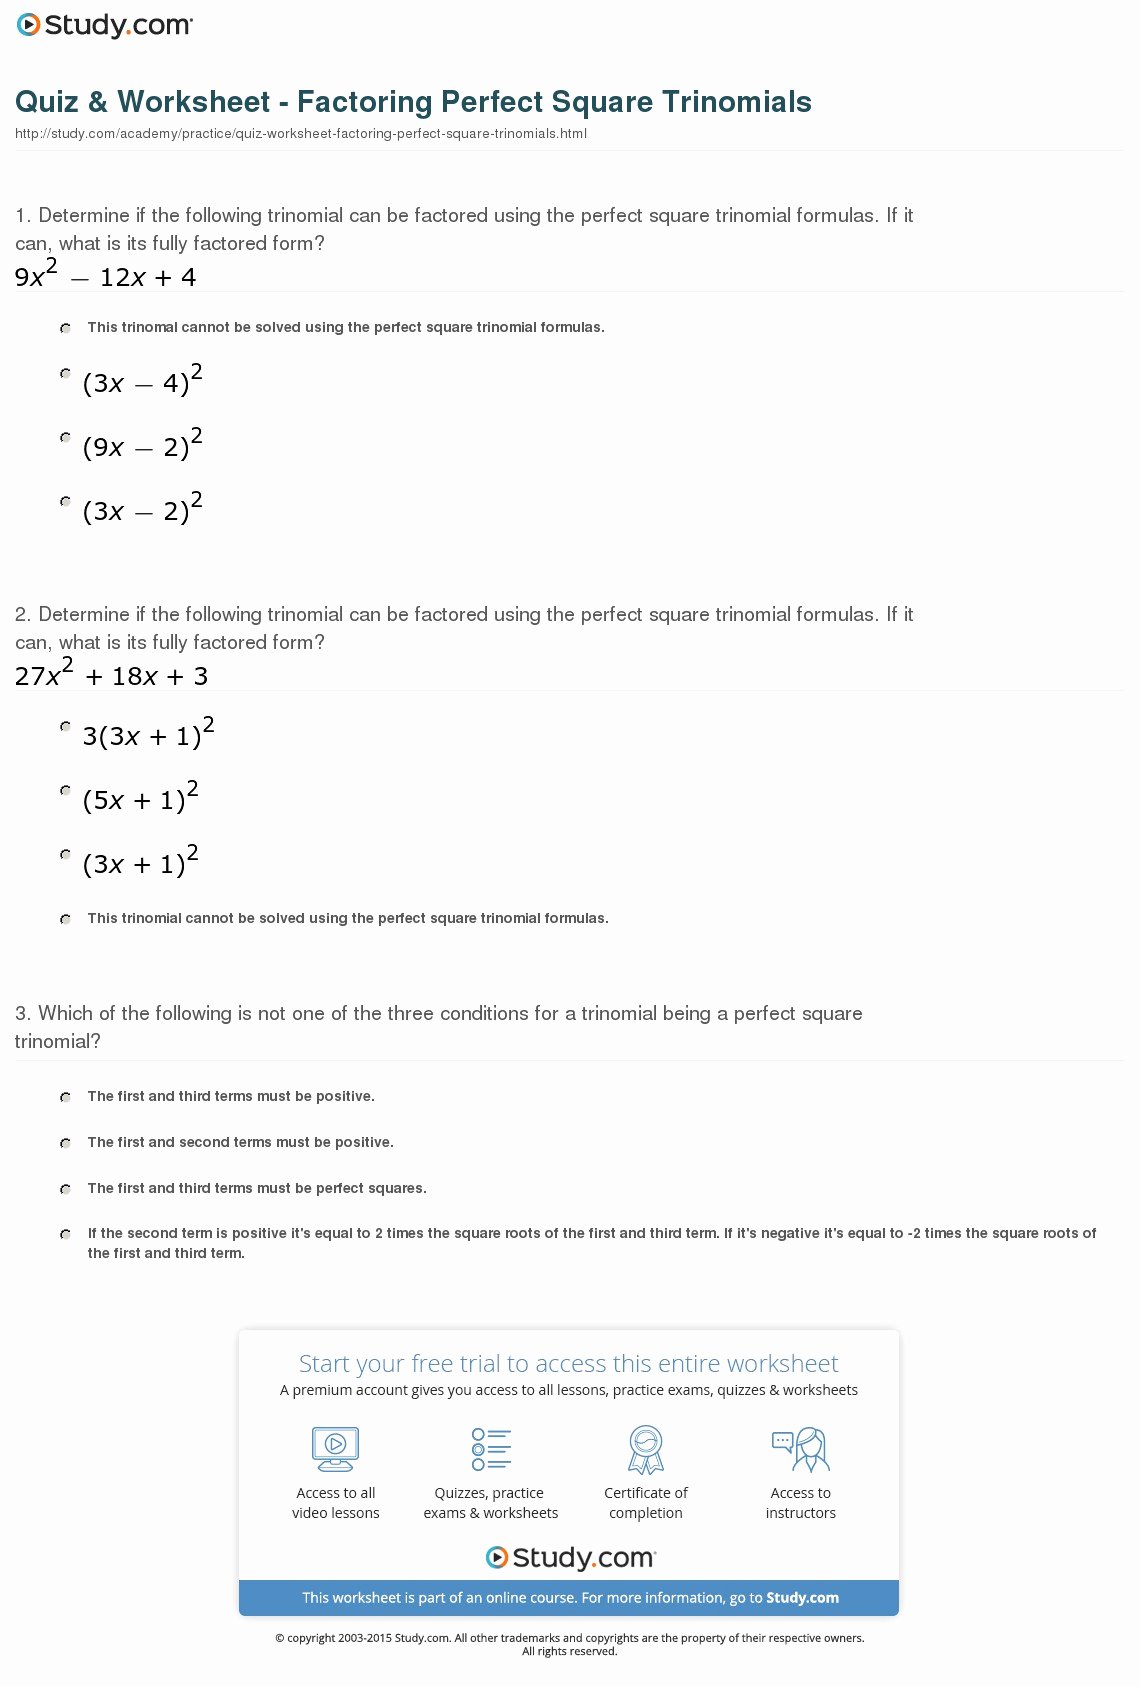 Factoring Trinomials Worksheet Pdf Unique Quiz &amp; Worksheet Factoring Perfect Square Trinomials